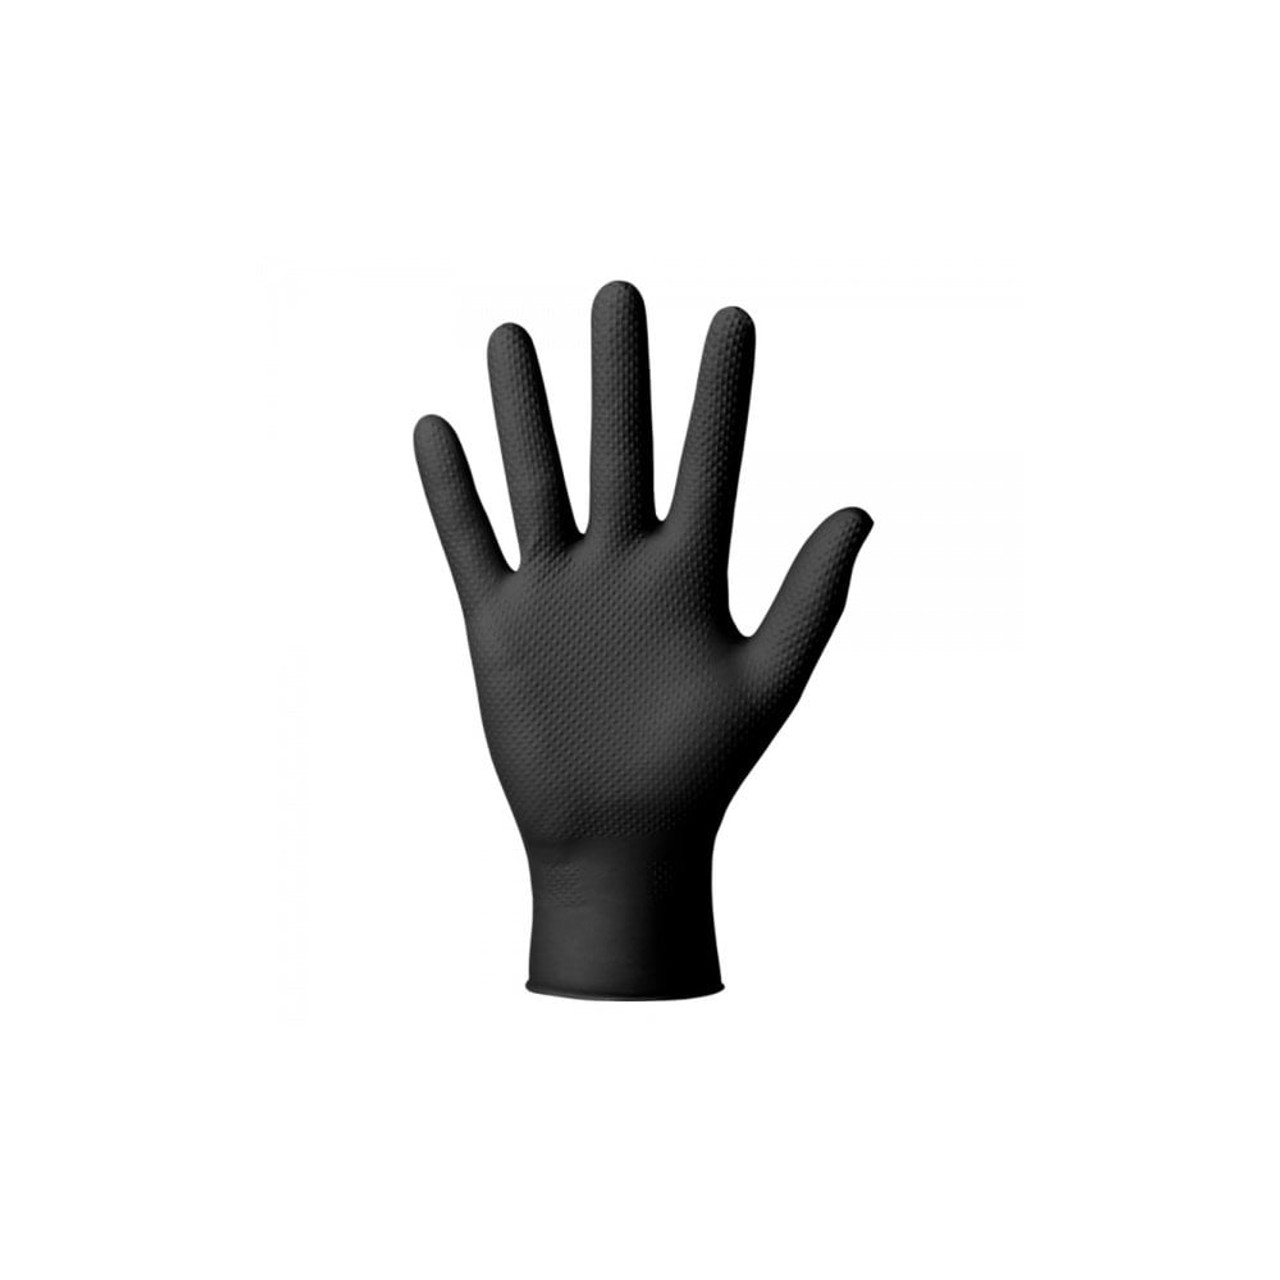 Single Glove being worn